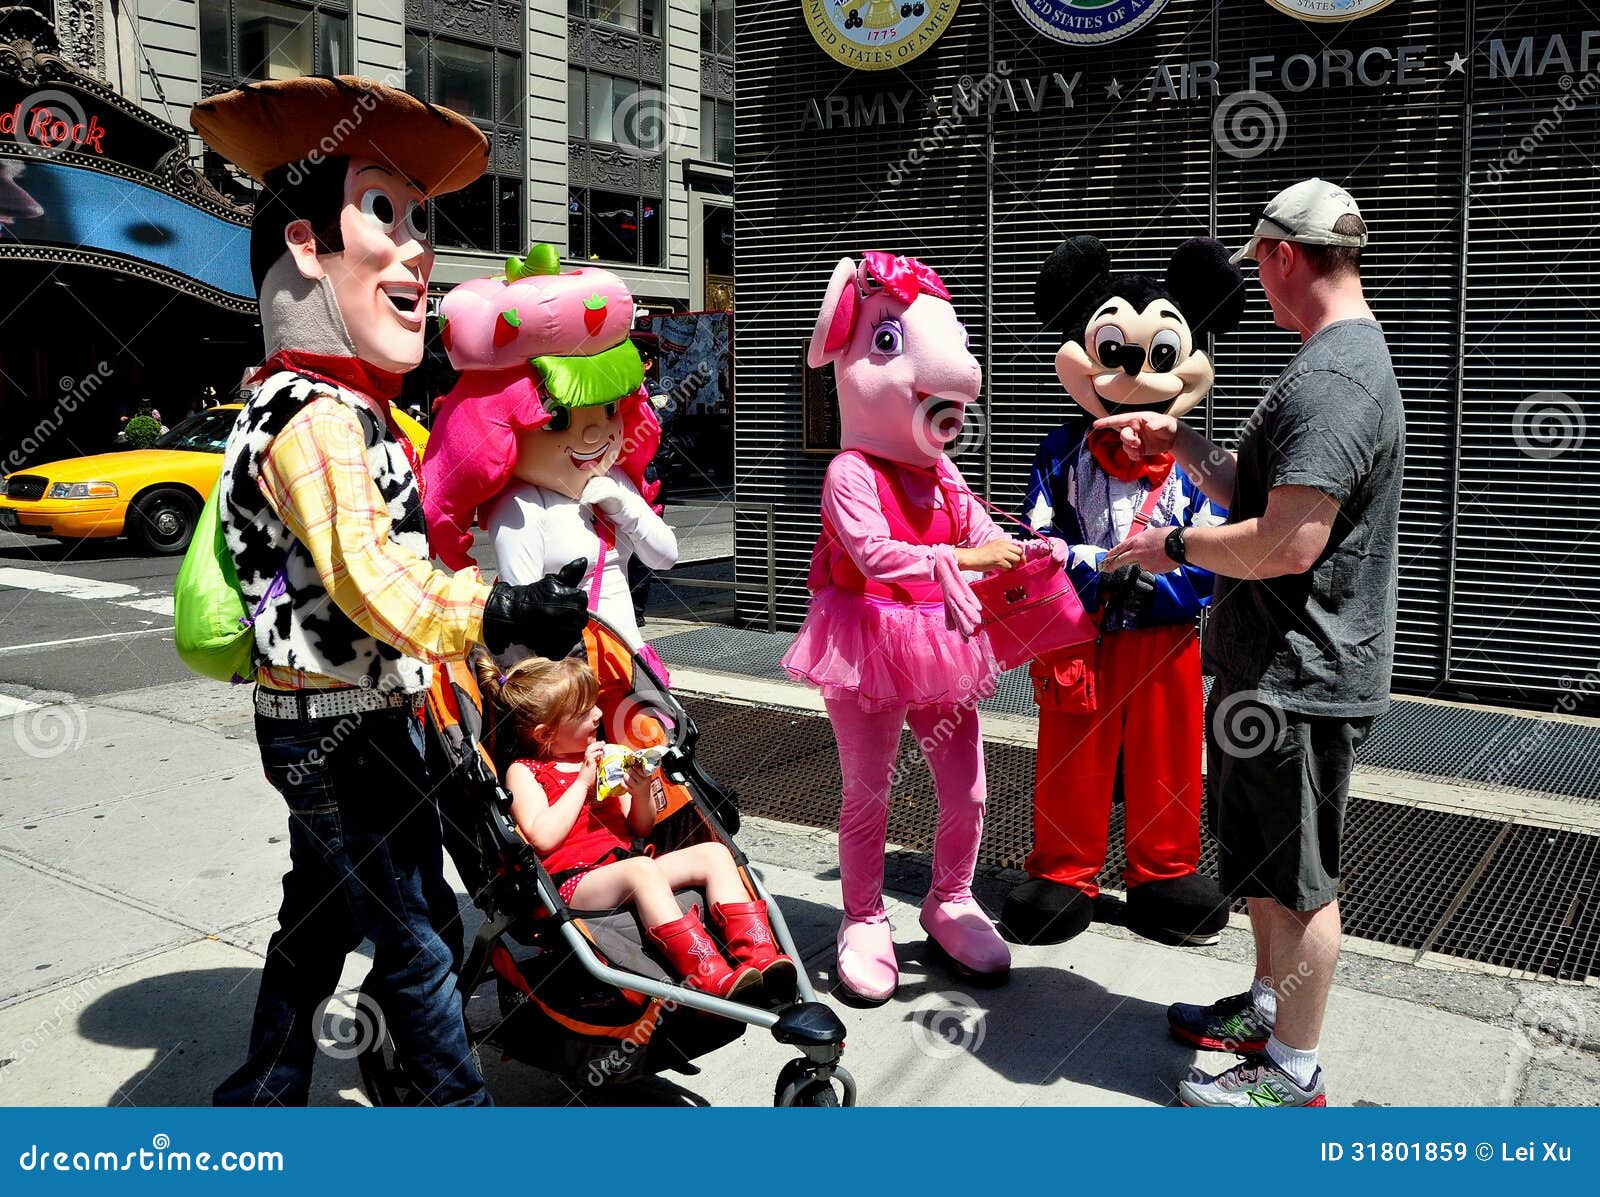 NYC: De Karakters van Times Squaredisney. De actoren kleedden zich aangezien de karakters van Disney geanimeerde films toeristen in het Times Square van NYC begroeten om foto's met hen te nemen - en om uiteinden te verzoeken.